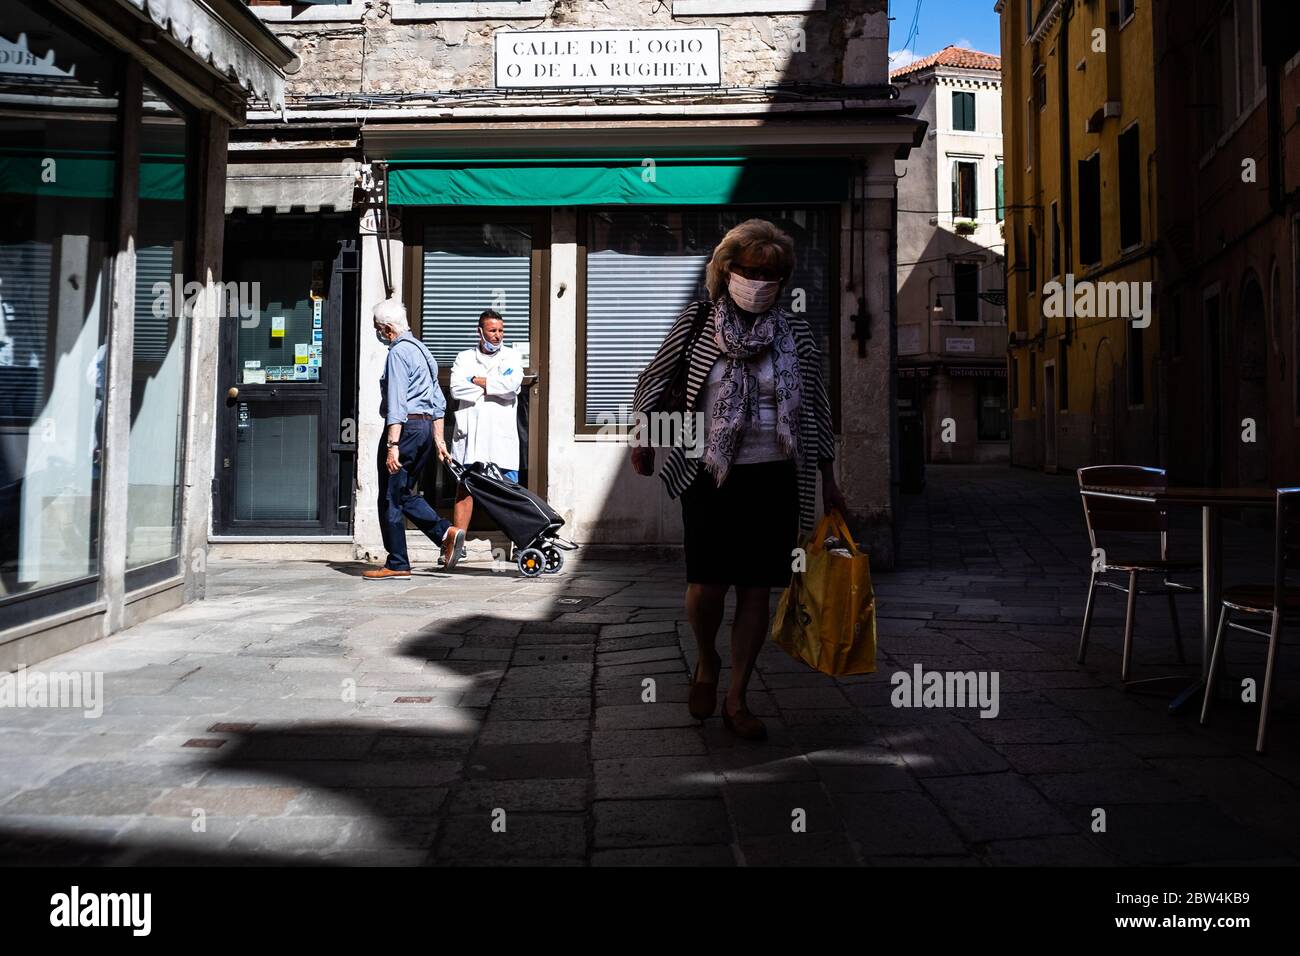 VENISE, ITALIE - MAI 2020 : les citoyens portant des masques protecteurs juste après la réouverture de la ville après le confinement du coronavirus le mai 2020 Banque D'Images